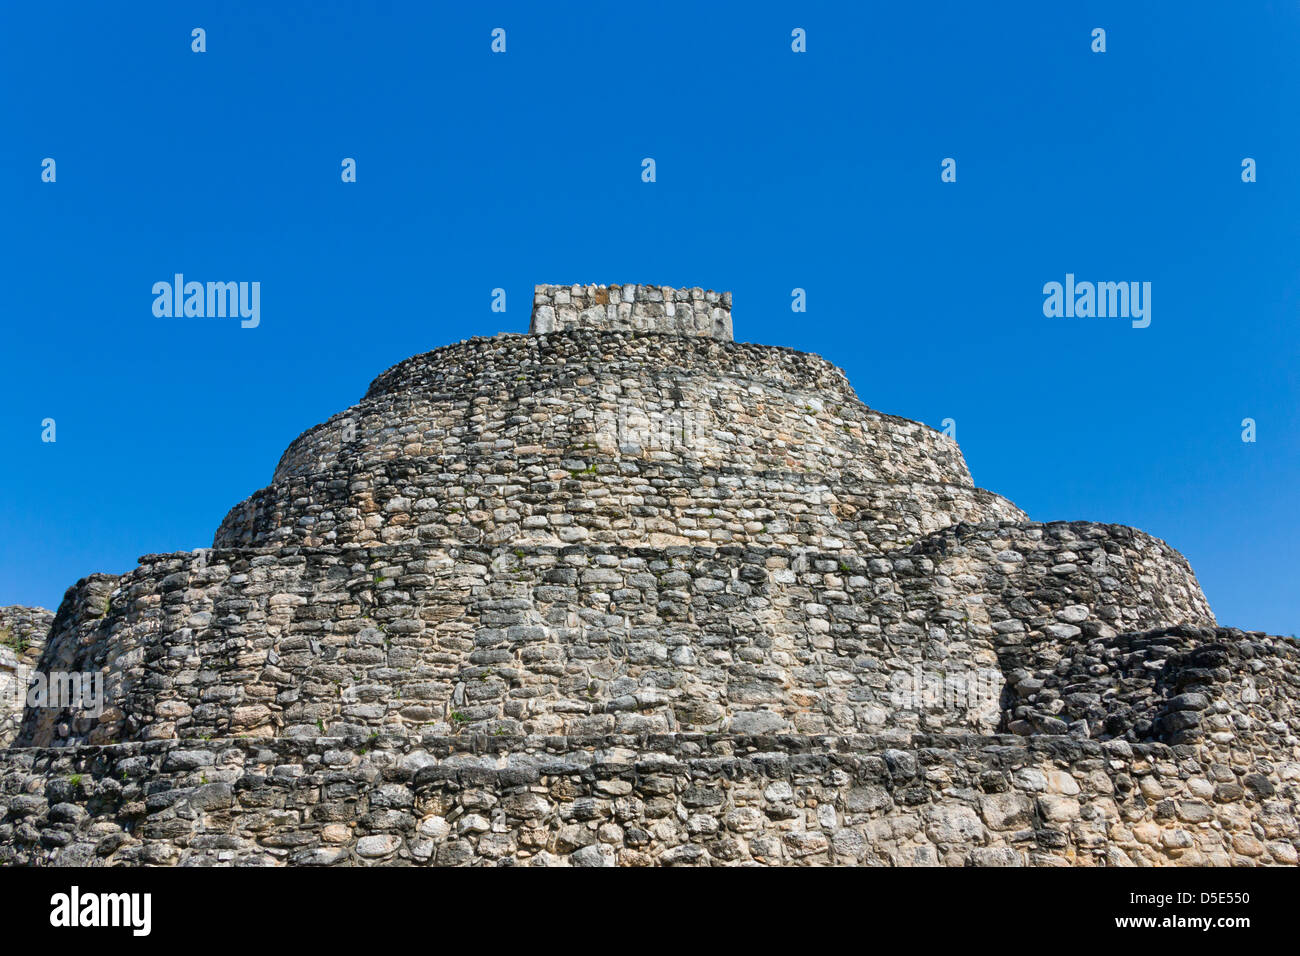 Oval Palace at Mayan ruins of Ek Balam, Yucatan, Mexico Stock Photo